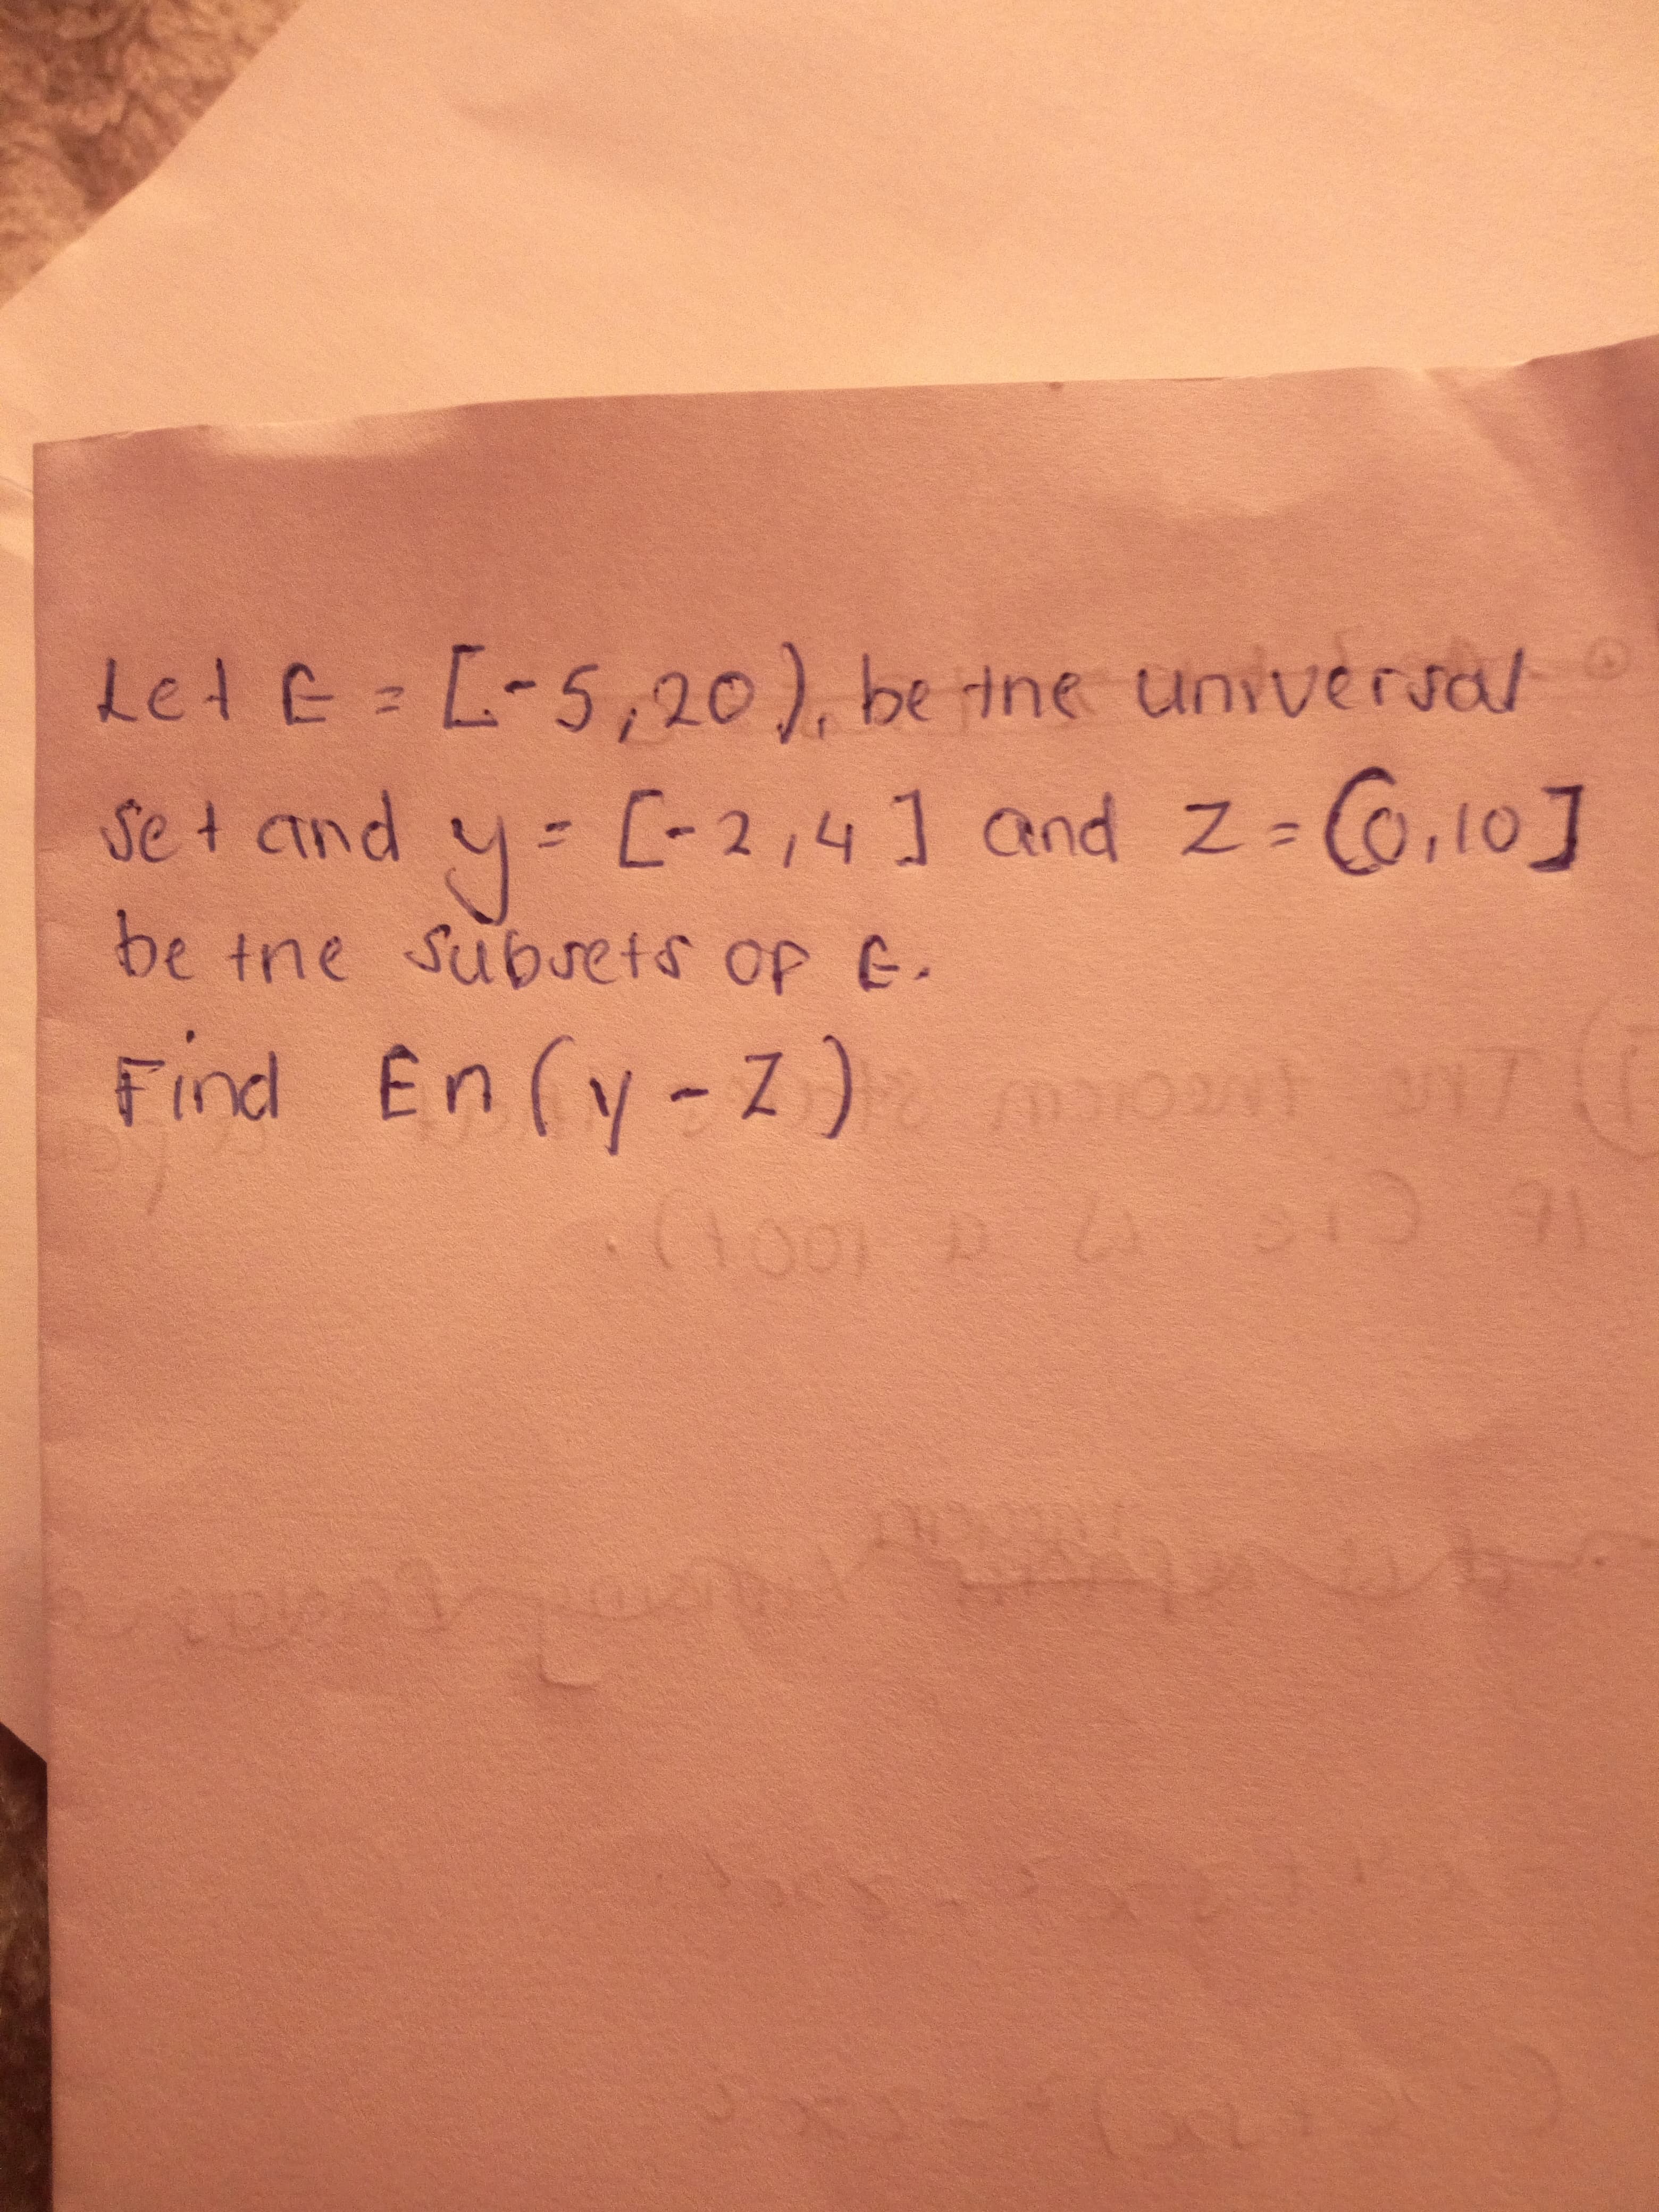 Let E L-5,20), be ine universal
y- C-2,4] and z-G,10]
Se t and
be tne Subets op E.
Find En (y-Z)ot
